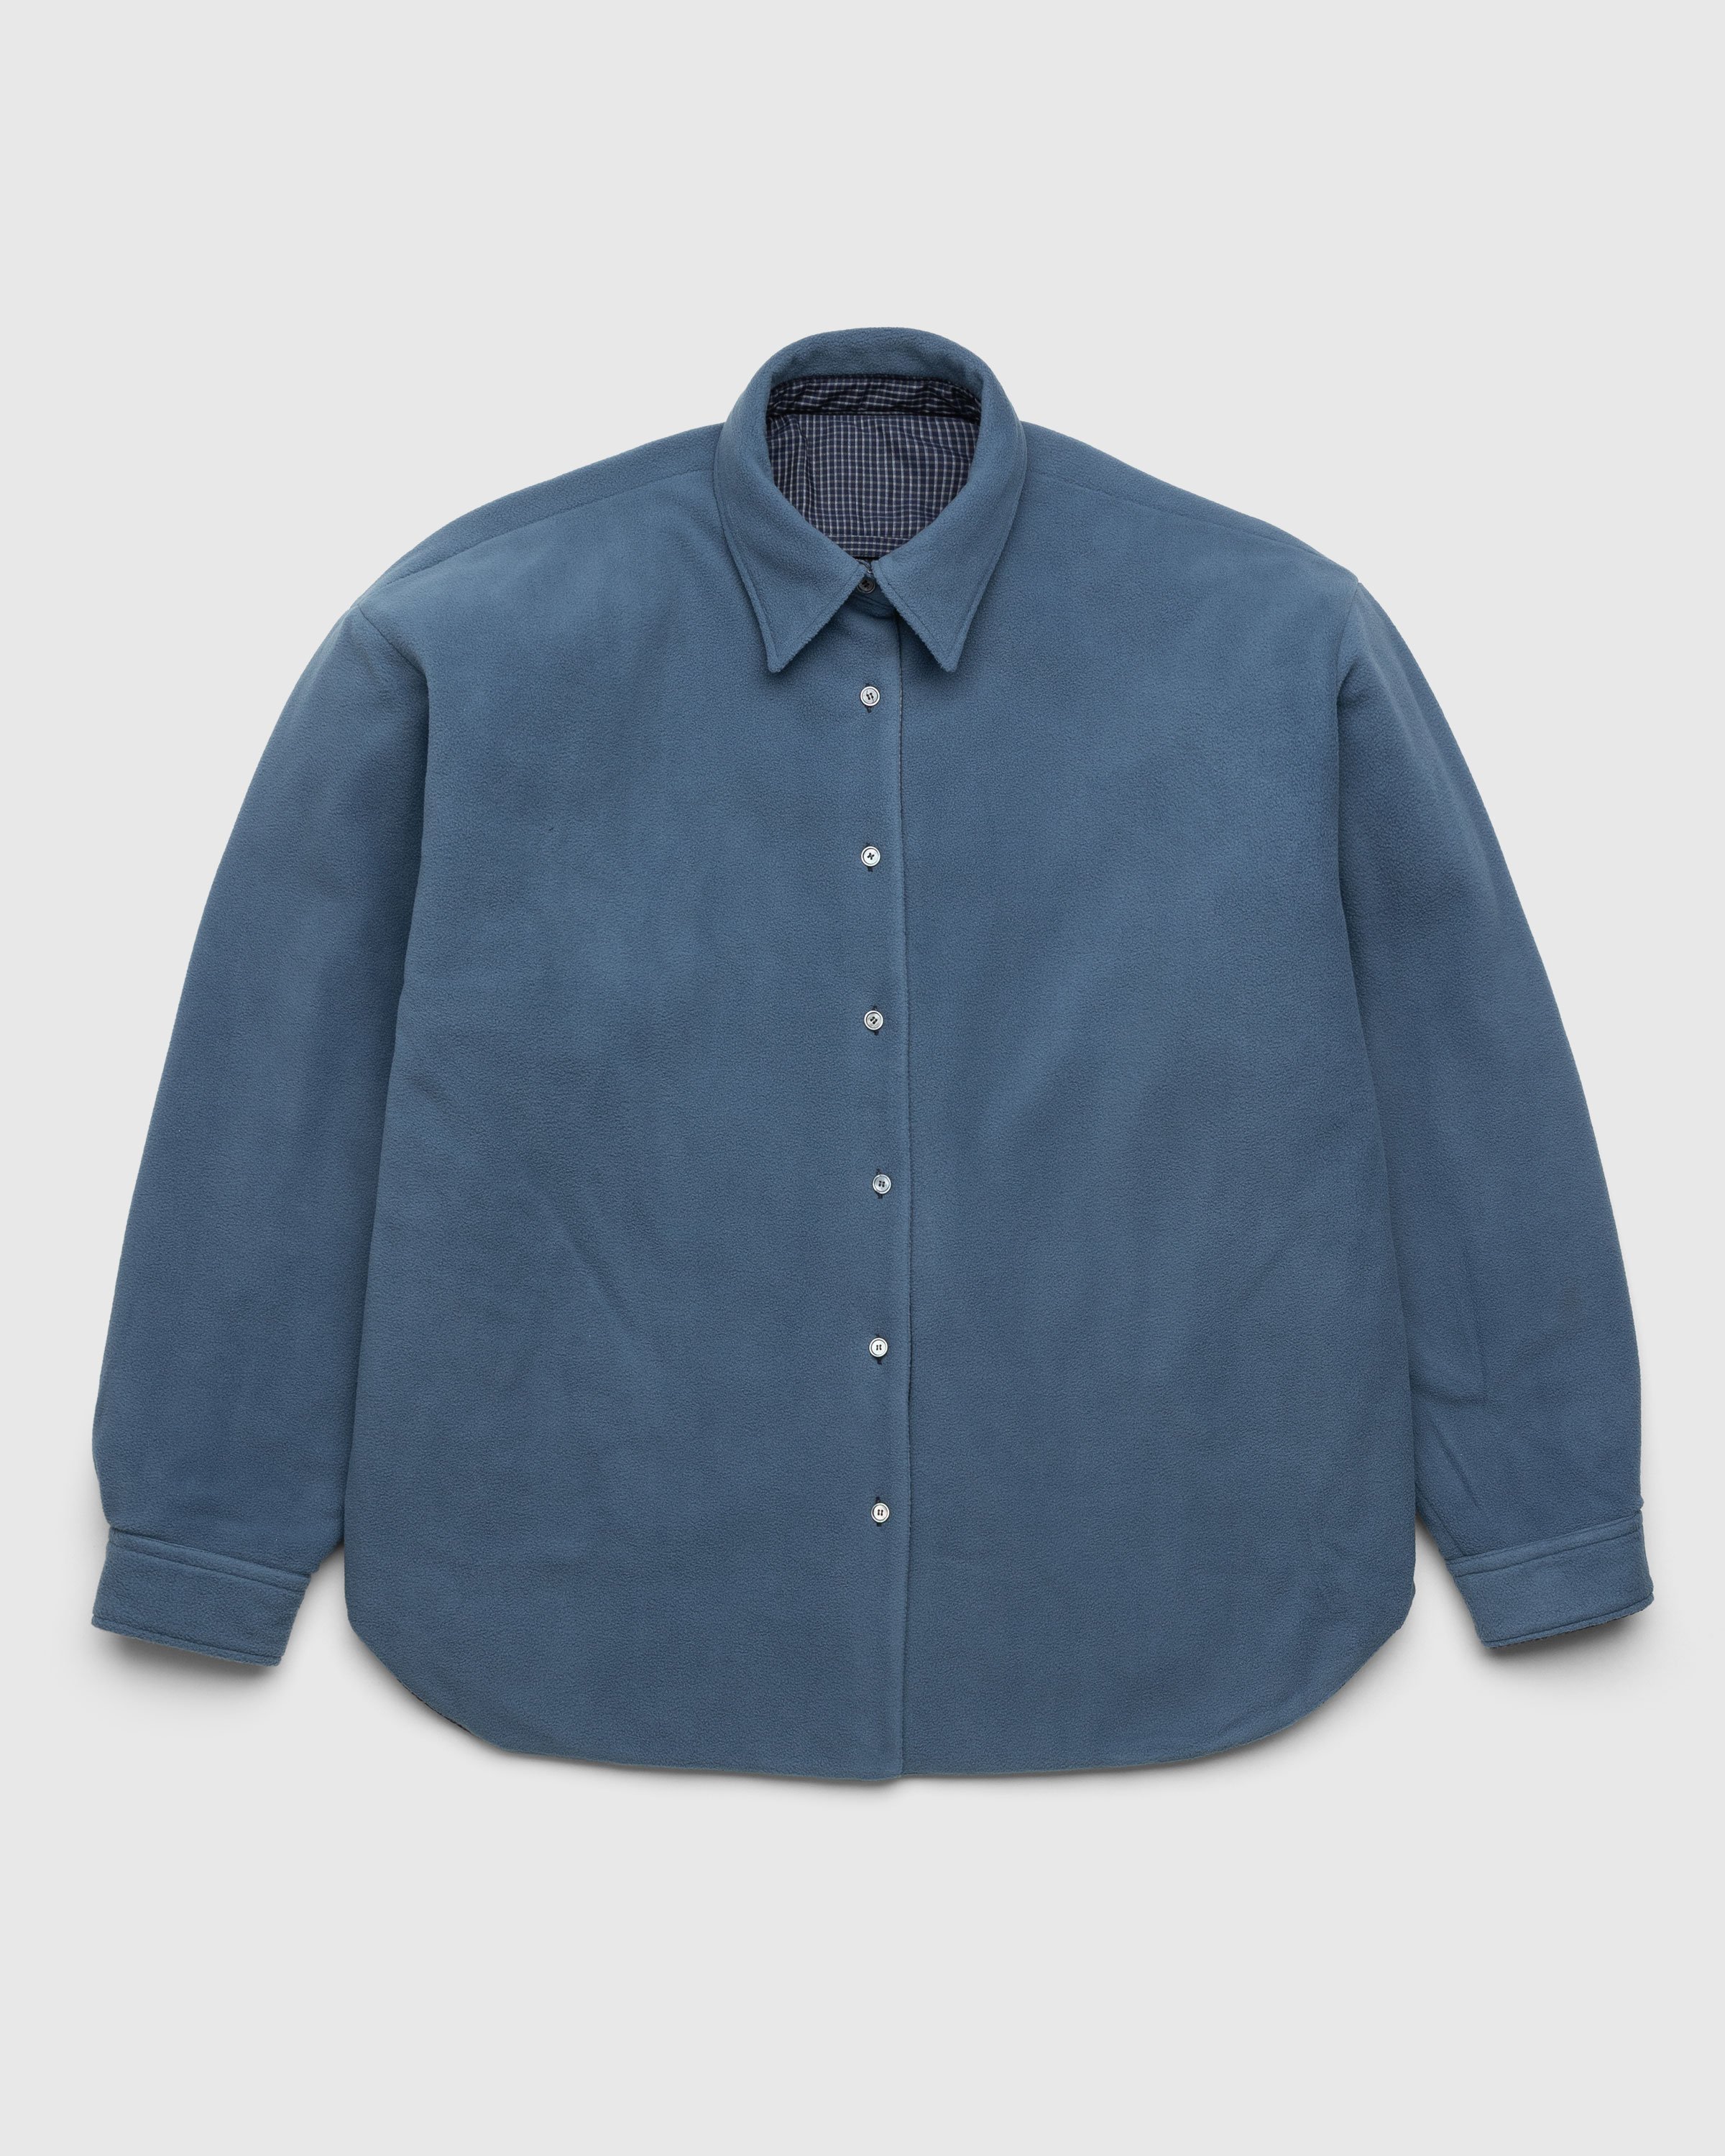 Acne Studios - Reversible Jacket Blue - Clothing - Blue - Image 2